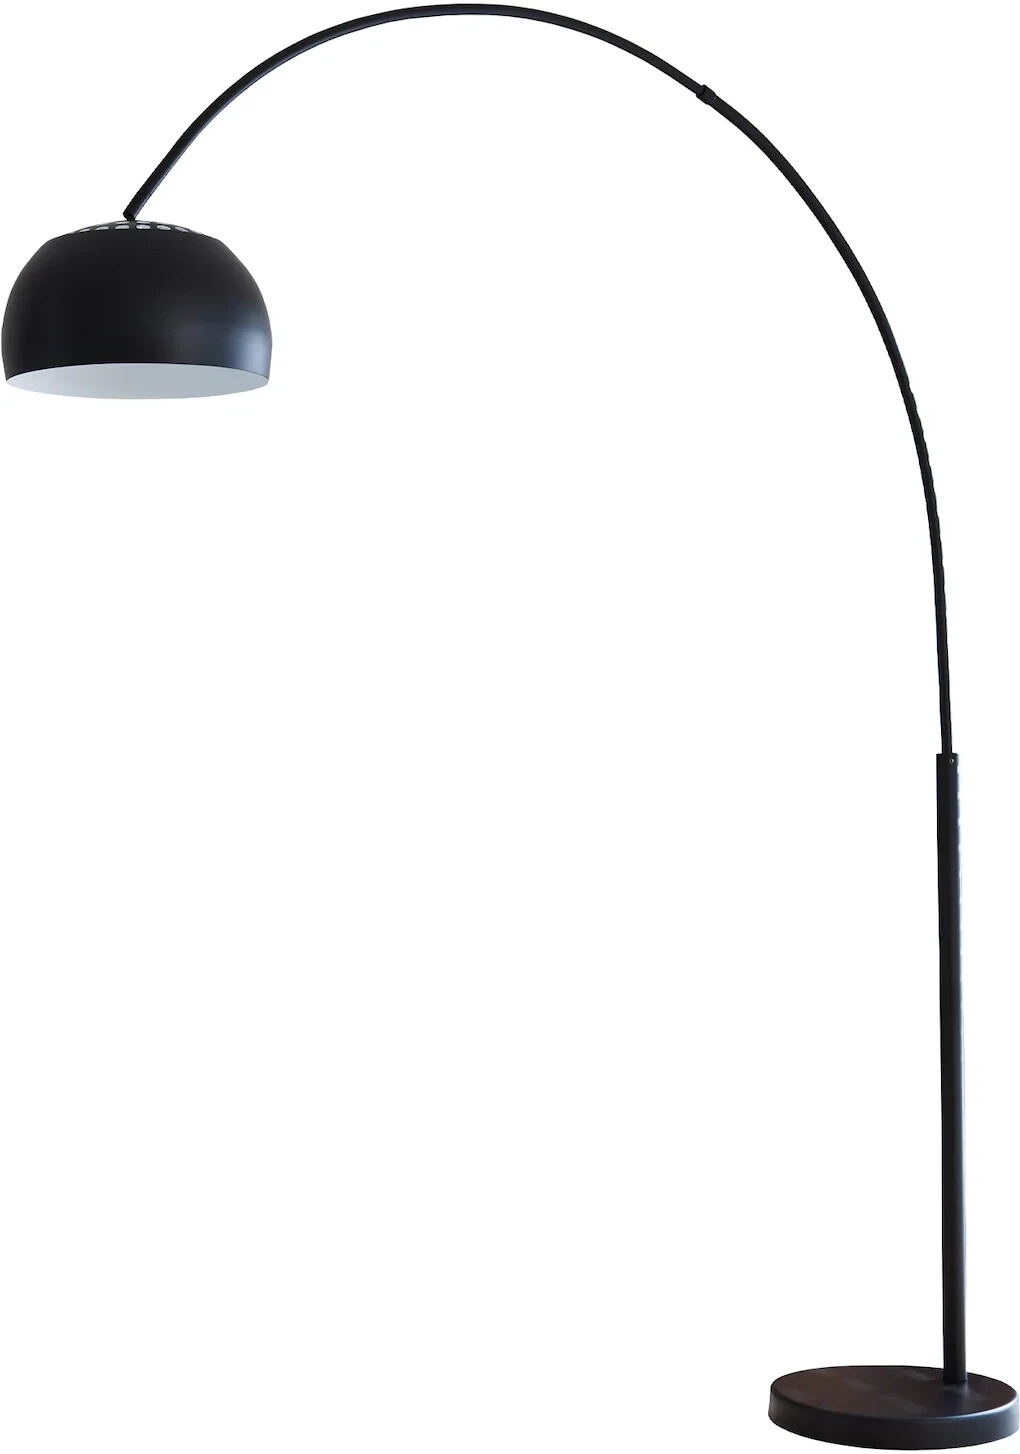 cm) Stehlampe SalesFever bei 239,00 € (399132) | Preisvergleich (195 ab Bogie